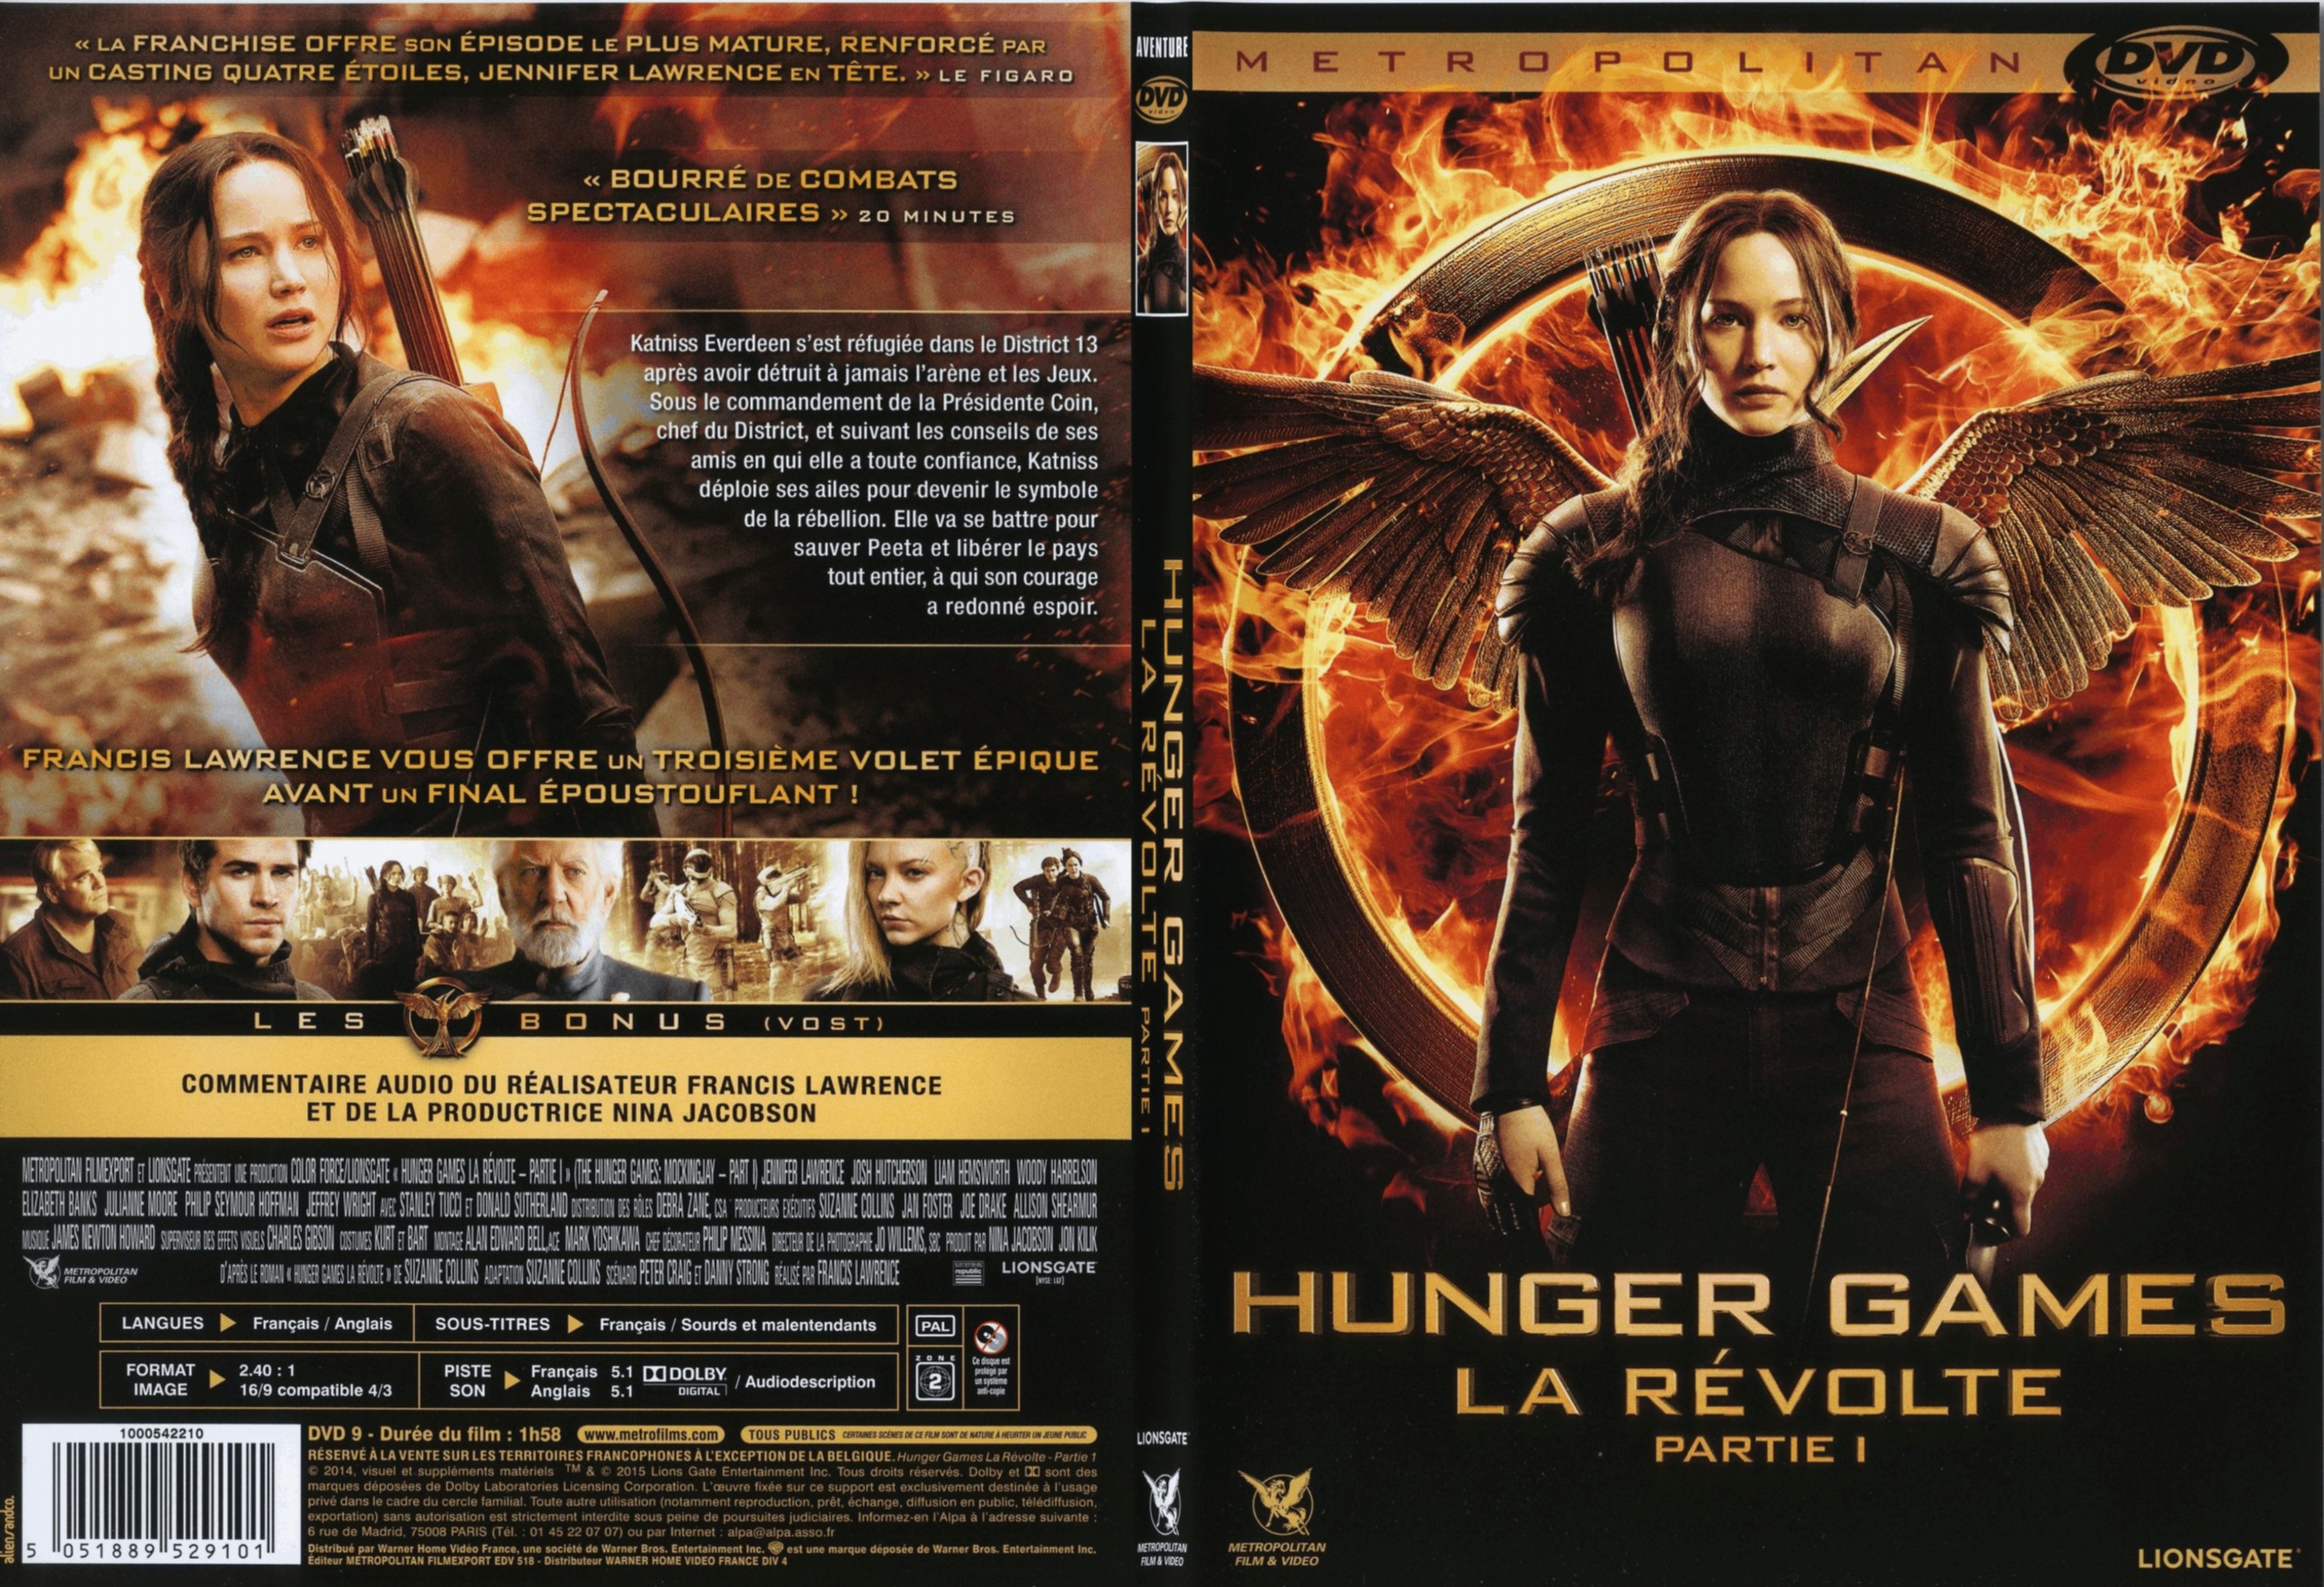 Jaquette DVD Hunger Games La Rvolte : Partie 1 - SLIM